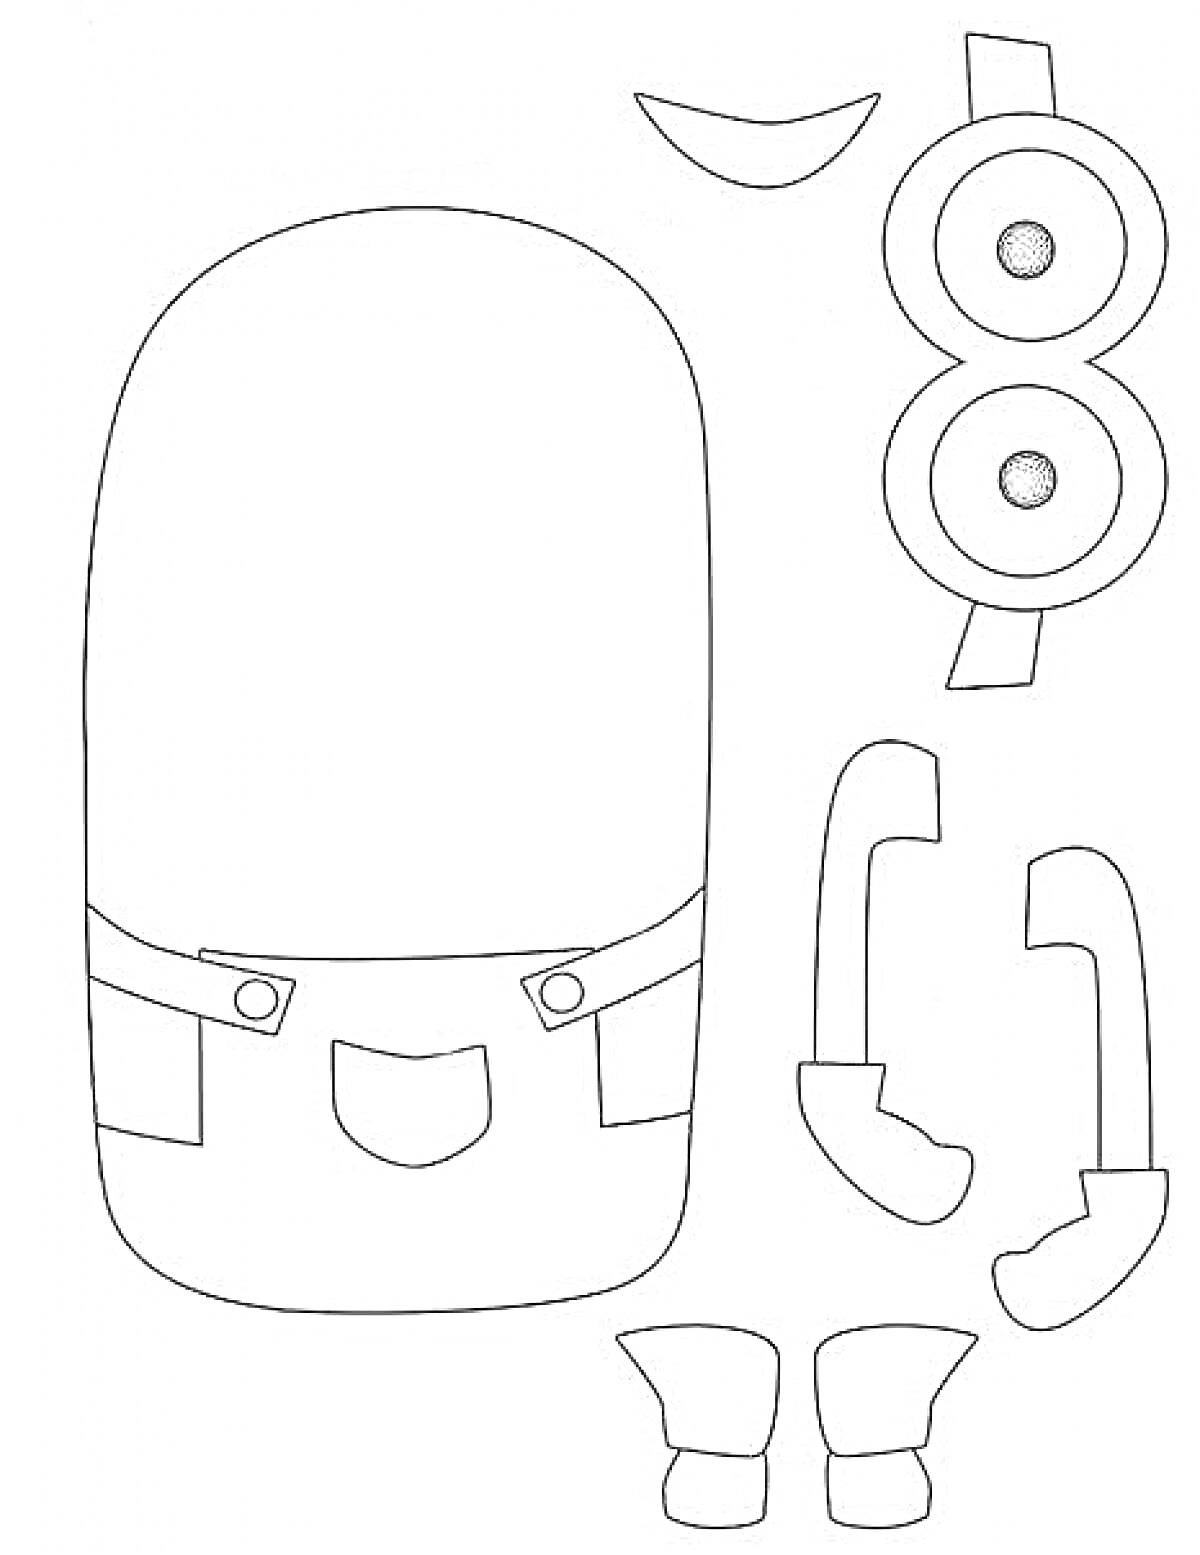 Раскраска Фигурки для аппликации миньона (тело, глаза, очки, руки, перчатки, ноги, рот)